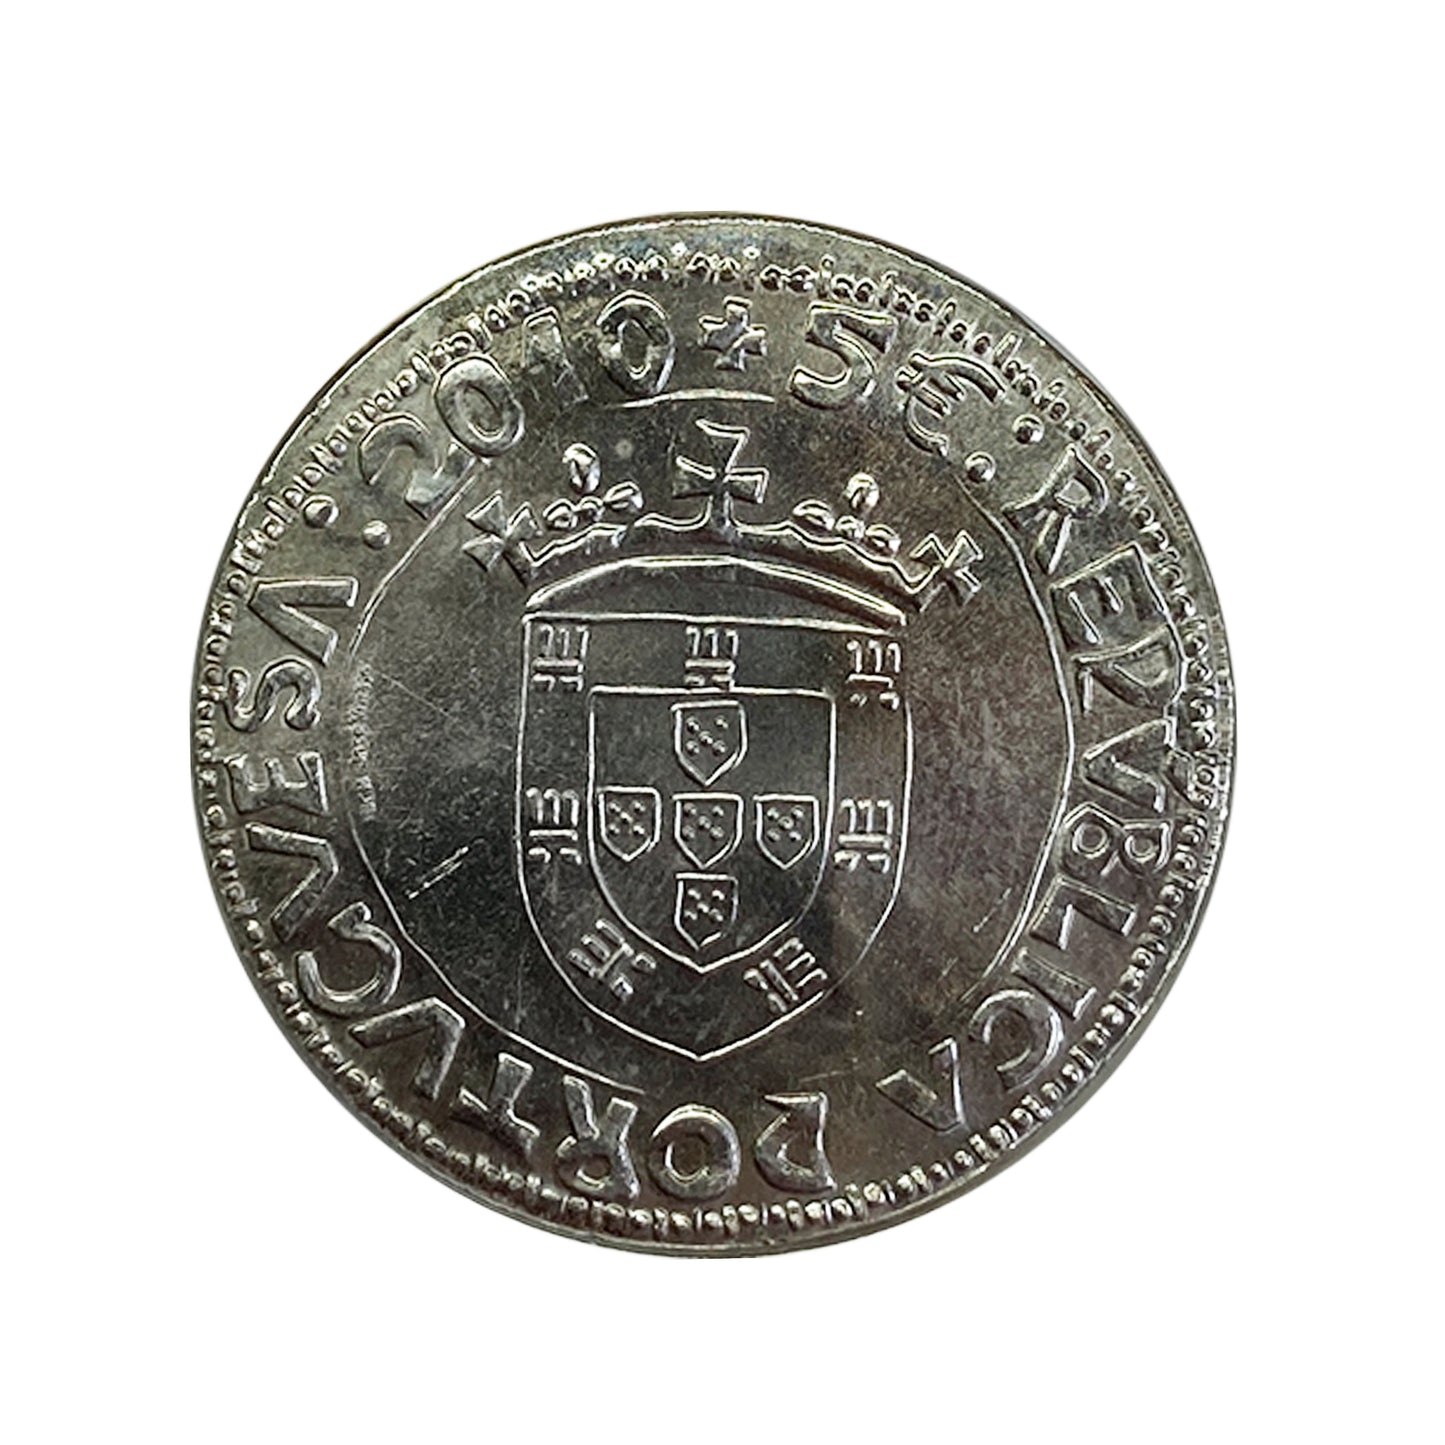 Portugal - Moneda 5 euros 2010 - Reinado de Juan II